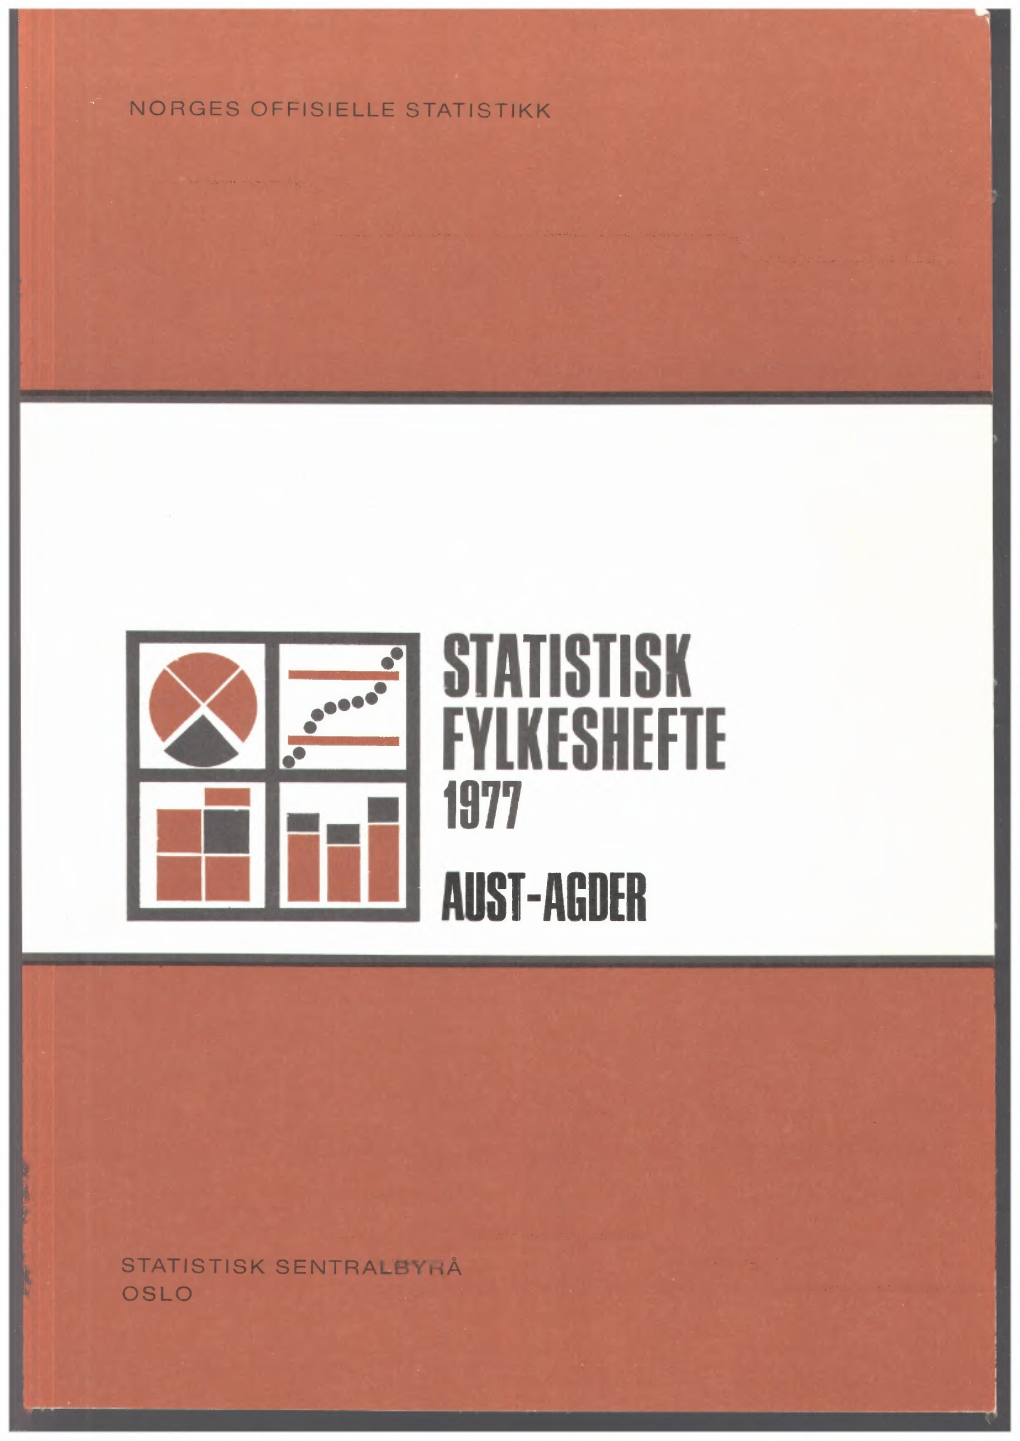 Statistisk Fylkeshefte 1977 Aust-Agder (NOS a 859)